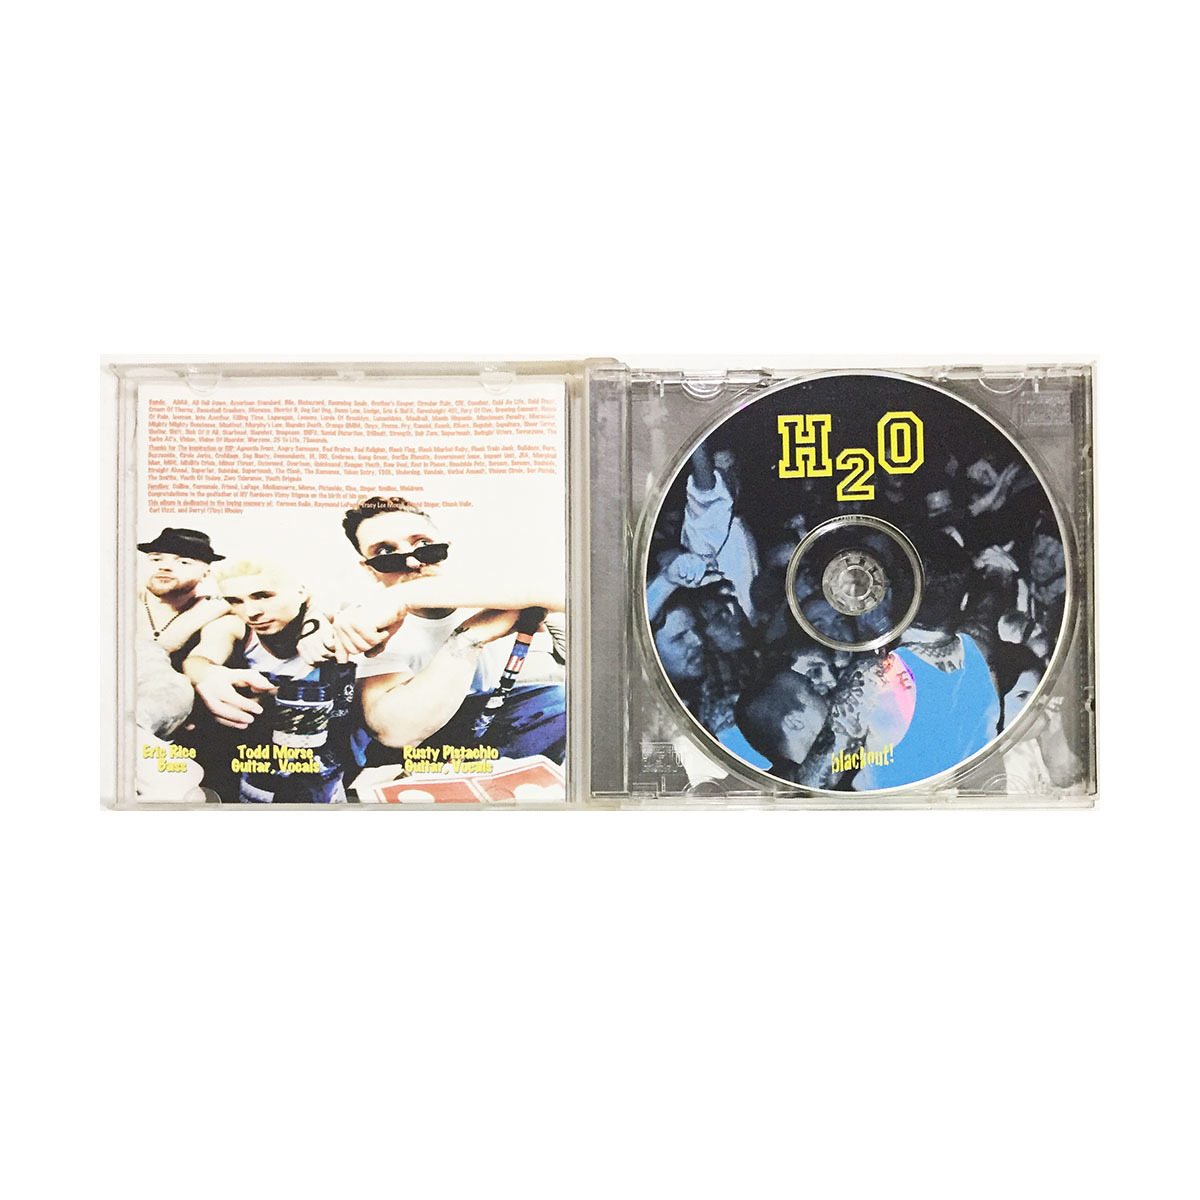 洋楽 CD H２O エイチ ツー オー ブラック アウト H2O Black Out ニューヨーク ハードコア パンク Hard Core オールド スクール Old School